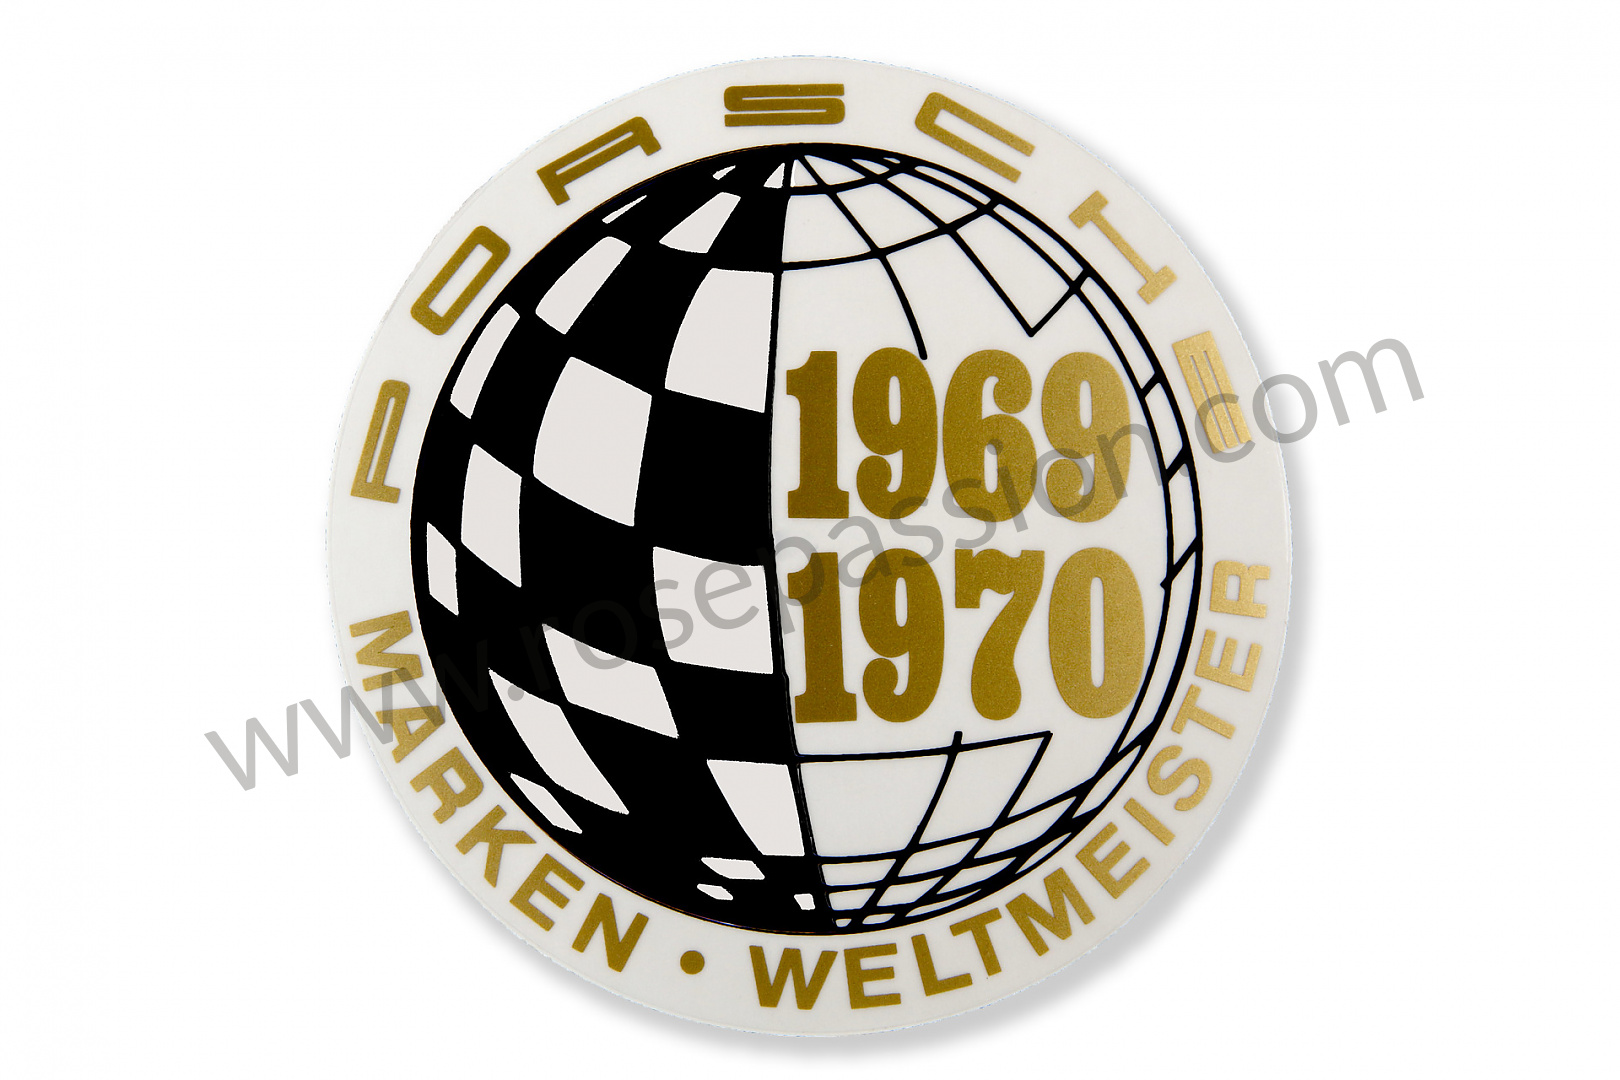 P233244 - 91170110301 - Sticker, marken weltmeister 69-70 for Porsche